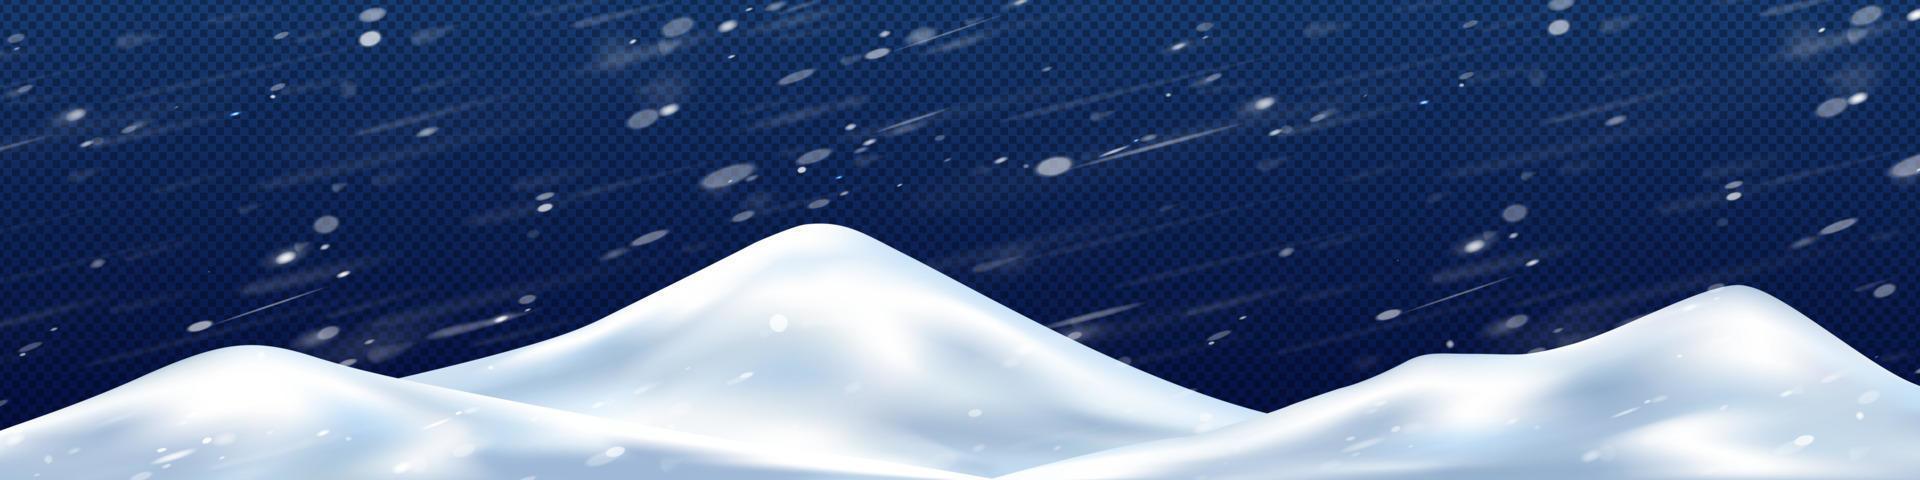 tas de neige dans la tempête hivernale png, illustration 3d vecteur